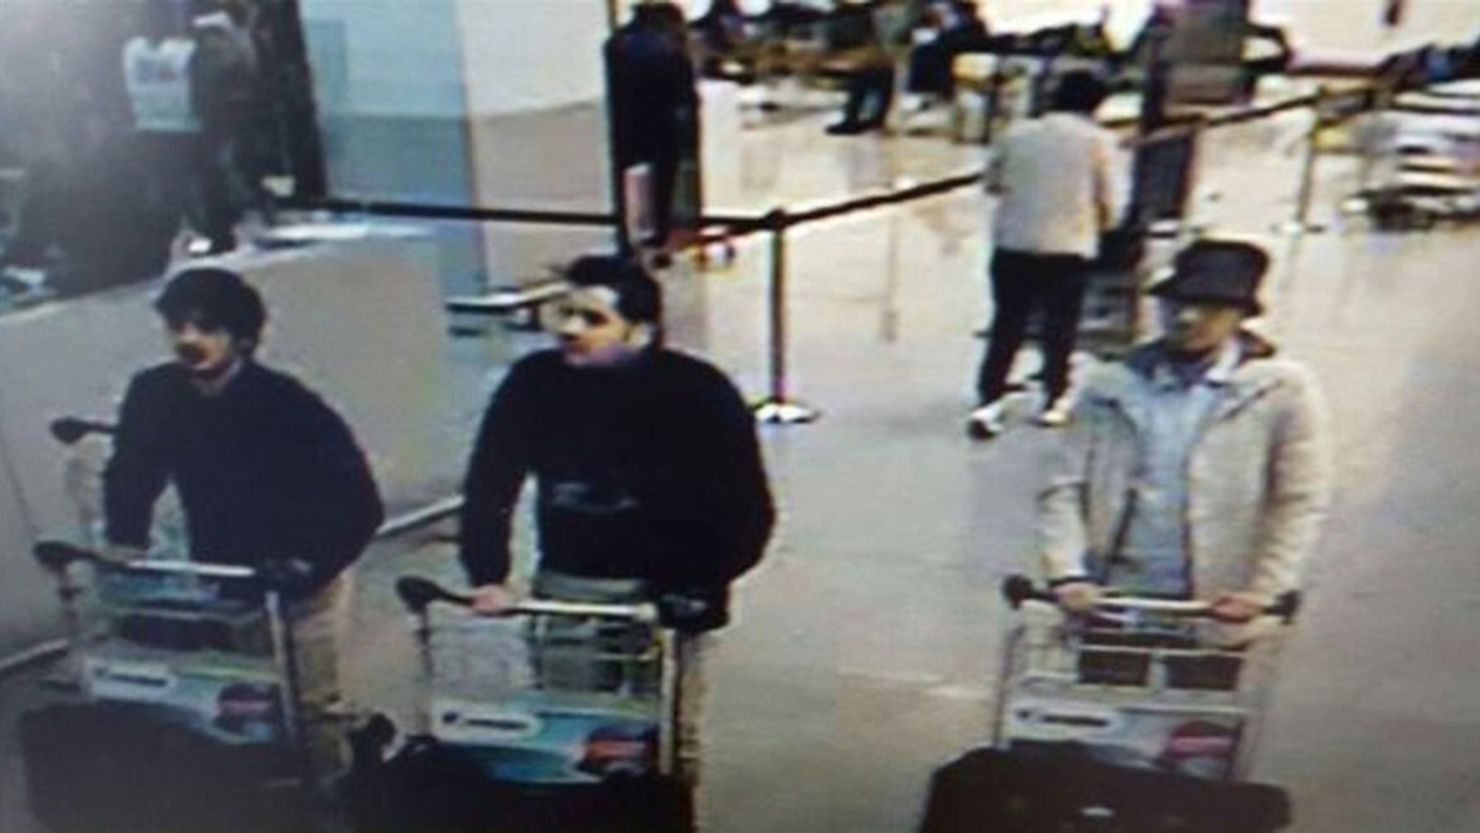 Como Najim Laachraoui, (a la izquierda, con un sombrero negro y chaqueta color claro) fue identificado el segundo responsable de ataques en Bruselas. Ahora la policía ha emitido orden de captura para el tercer sospechoso, el 'hombre del sombrero'.